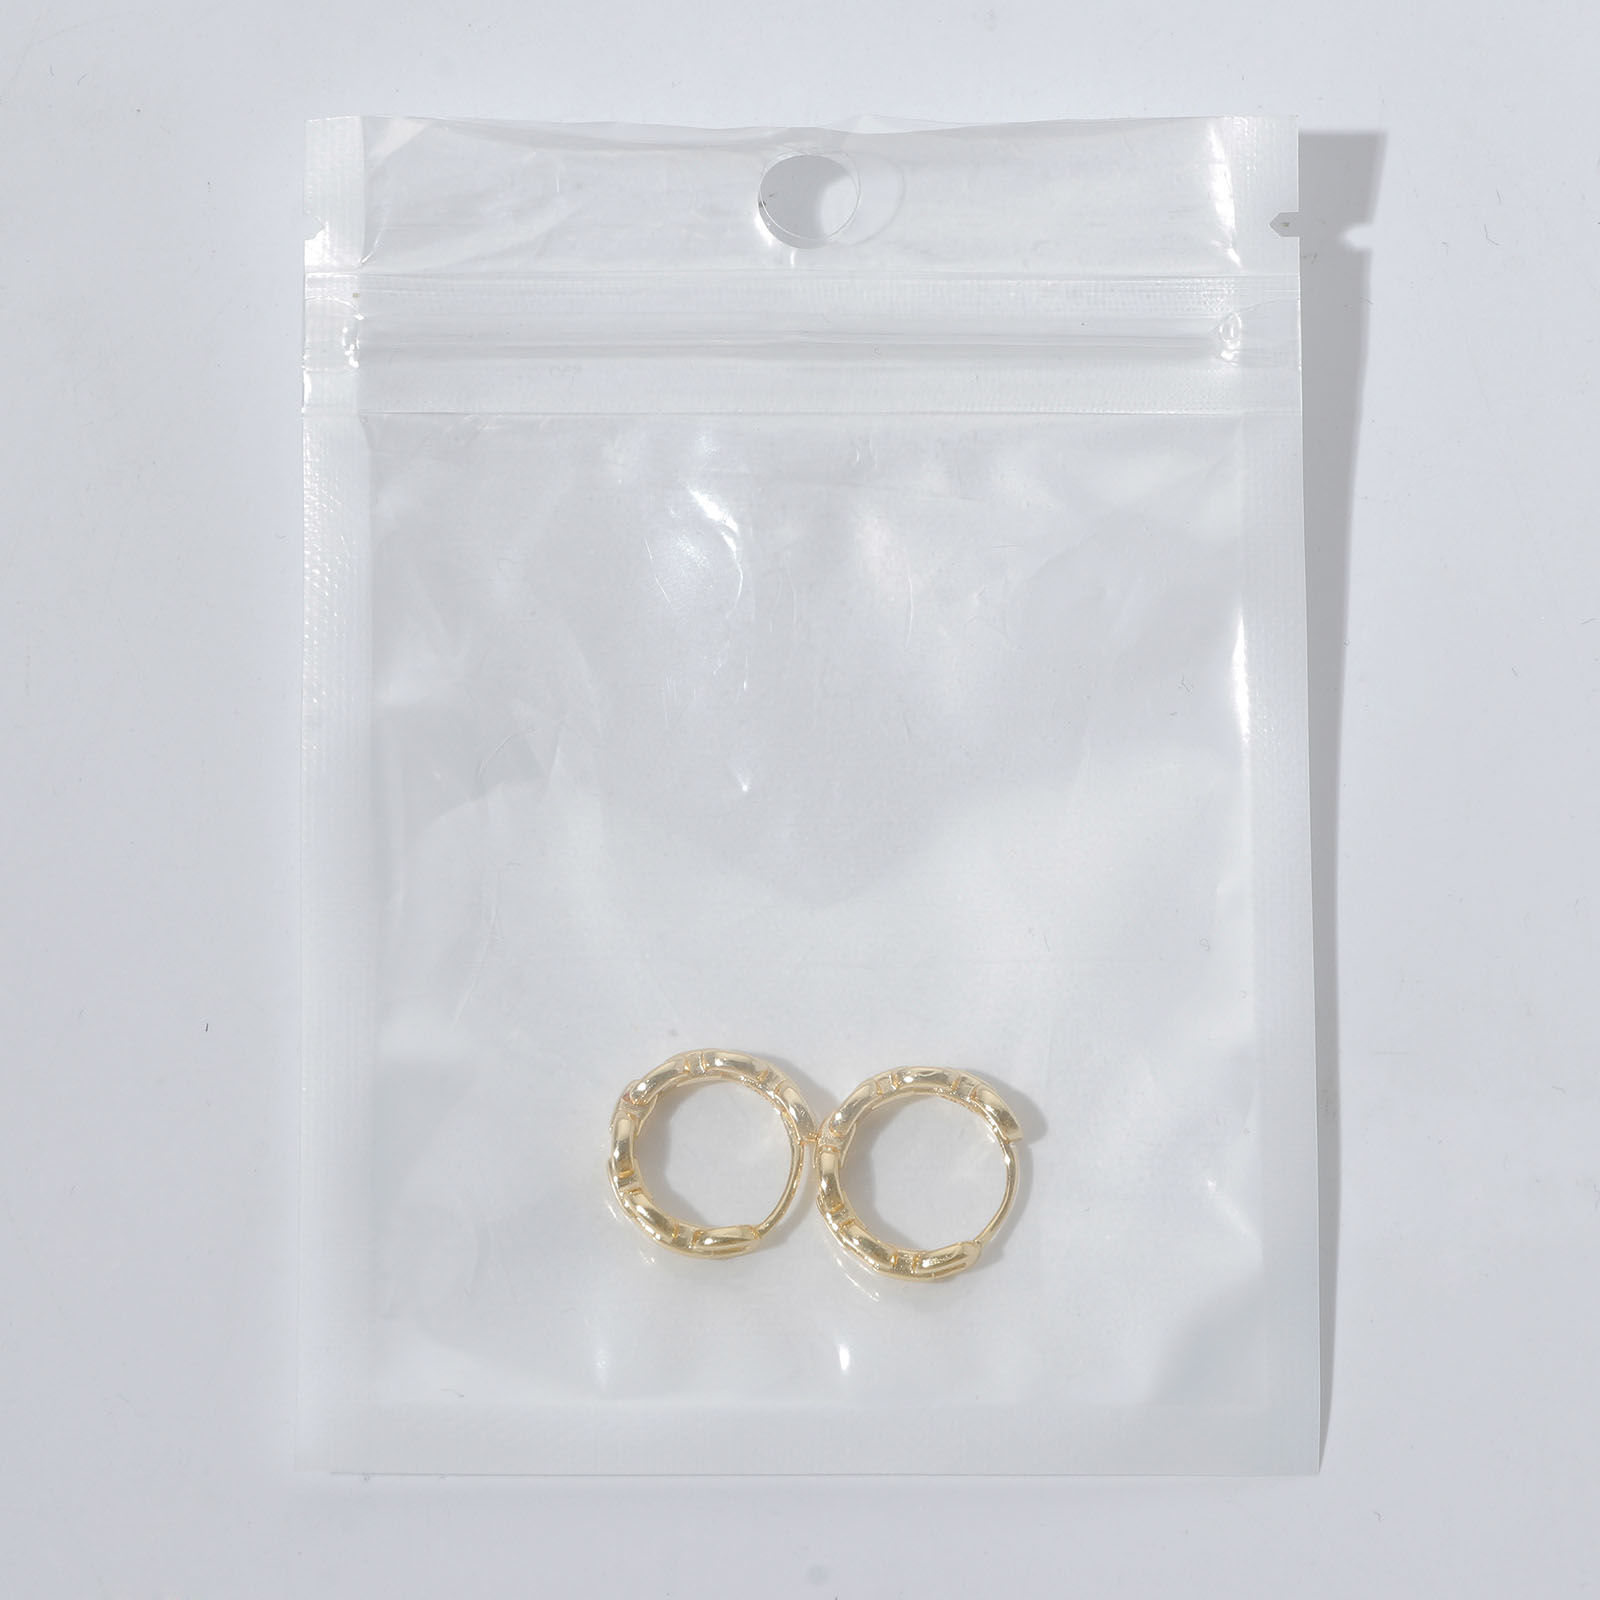 Bild von Umweltfreundlich Exquisit Ins Stil 14K echt Vergoldet Kupfer Uneinstellbar Ring Für Frauen 1 Stück